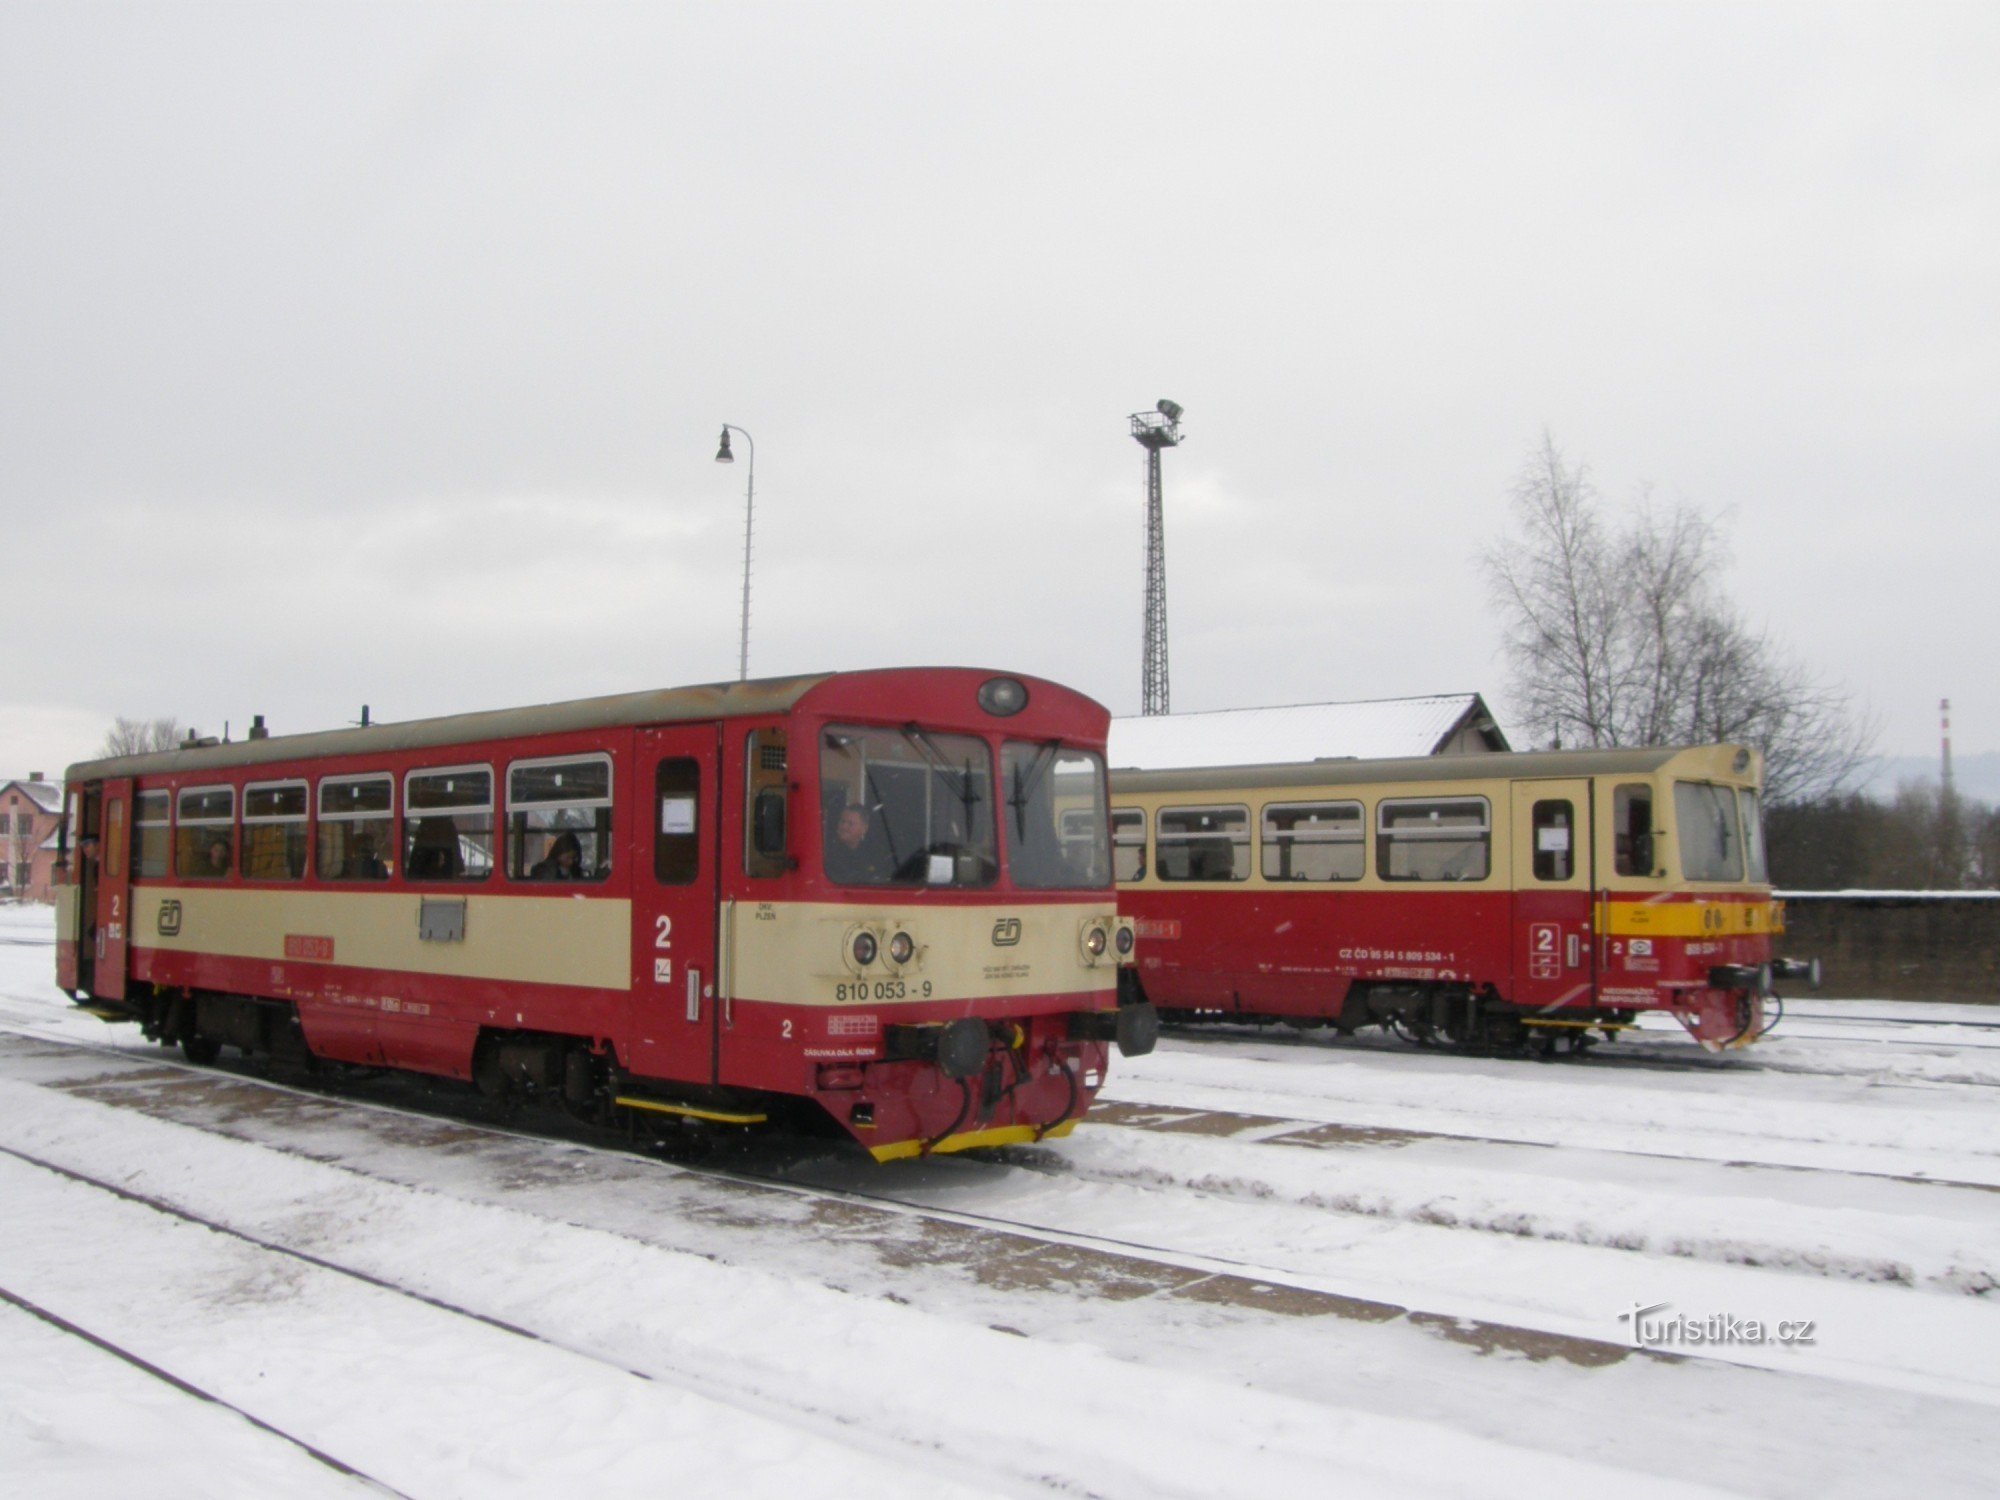 チェルニー・クジーシュ行きの列車もヴォラルから出発します。